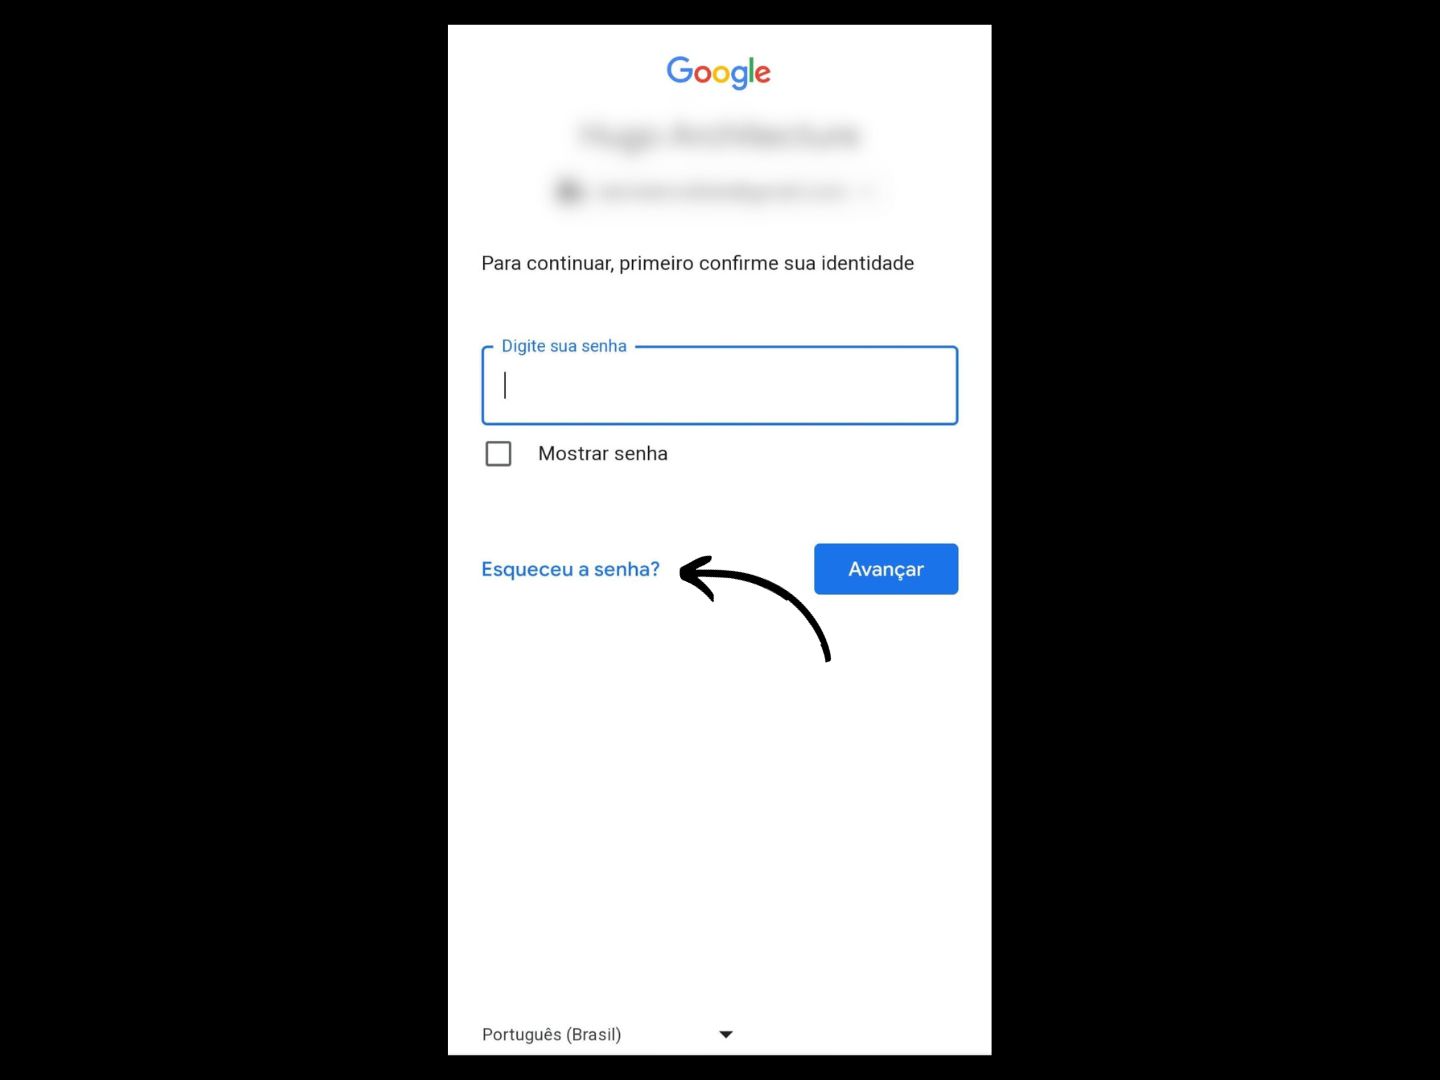 Imagem mostra seta apontando para "Esqueceu a senha?" onde você deve clicar para recuperar sua senha do Gmail